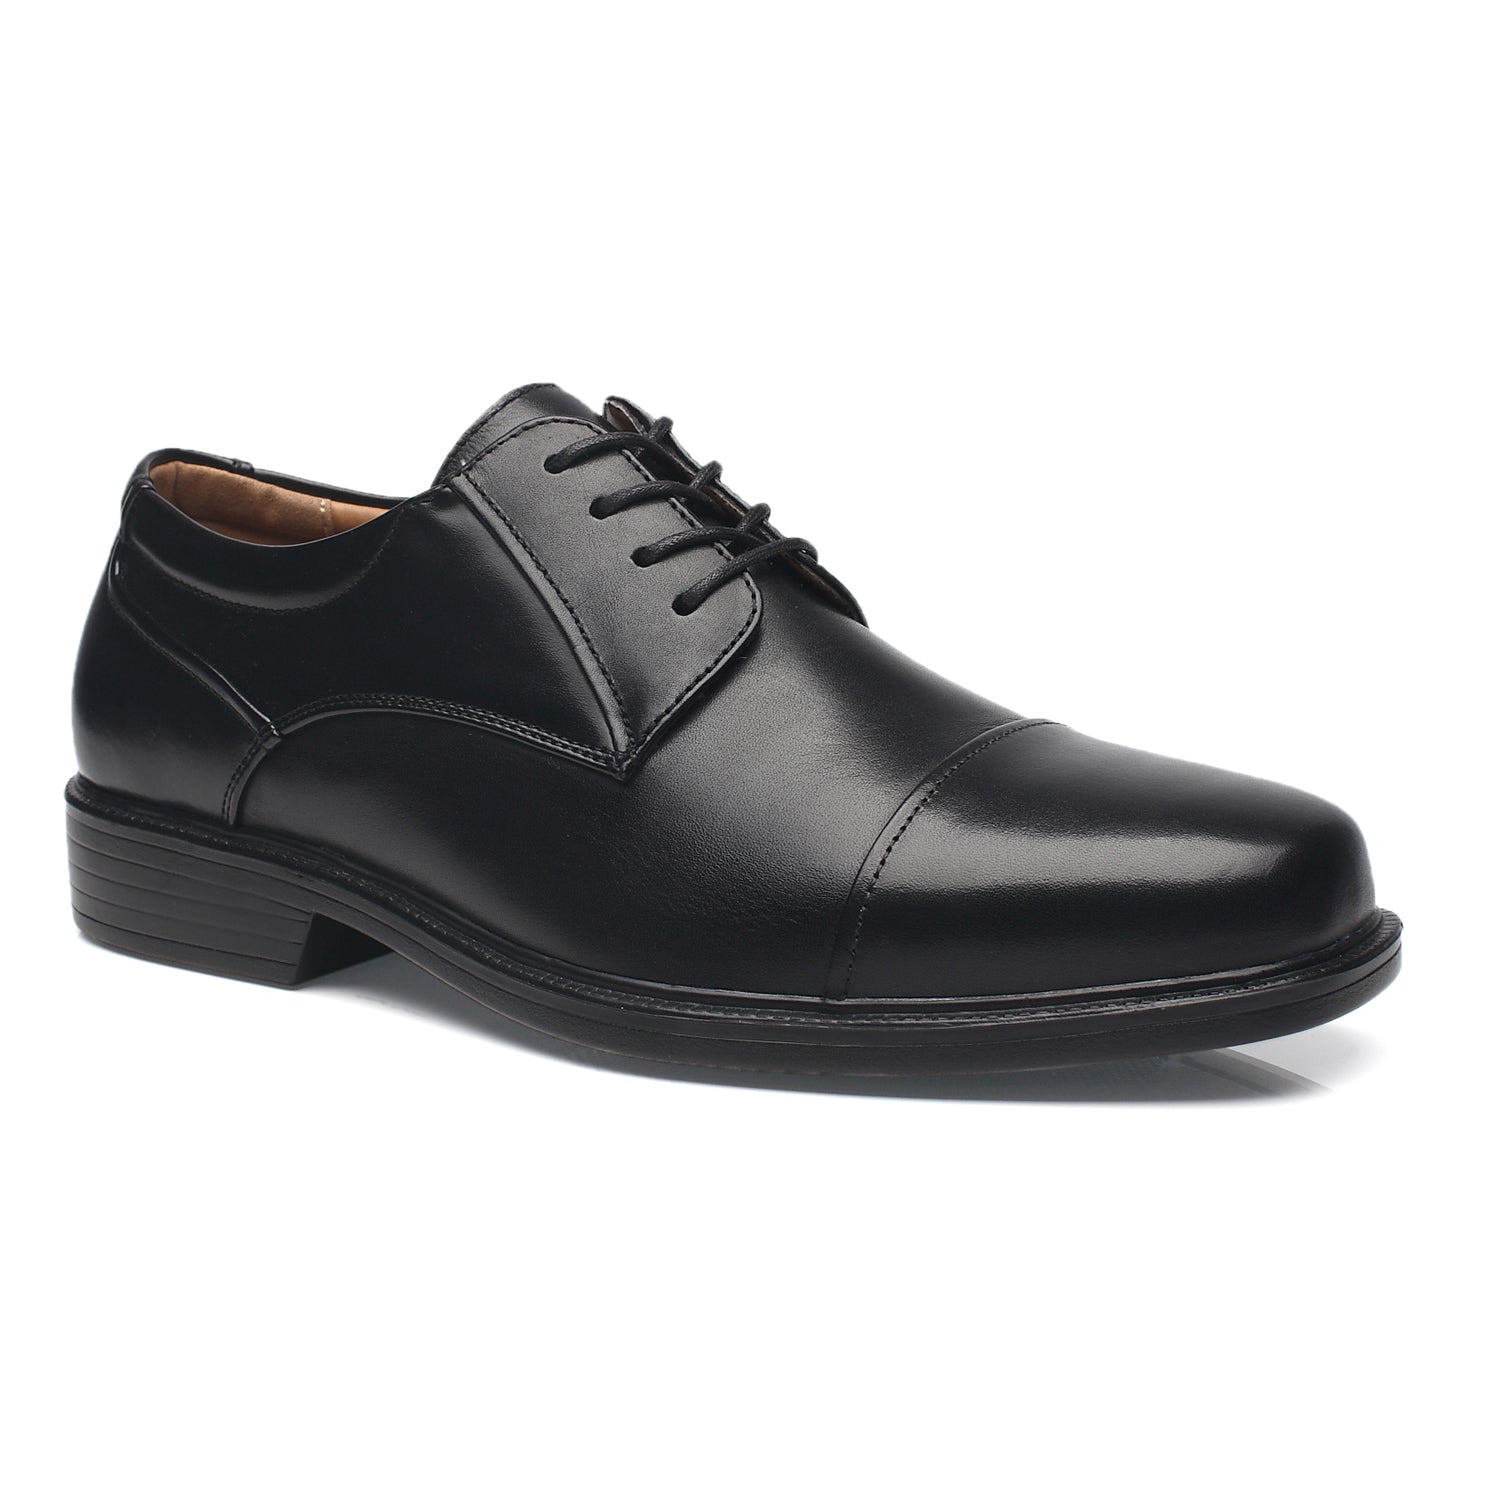 Men's Wide Width Oxford Shoes Wide-1-Black | La Milano Mens Shoes